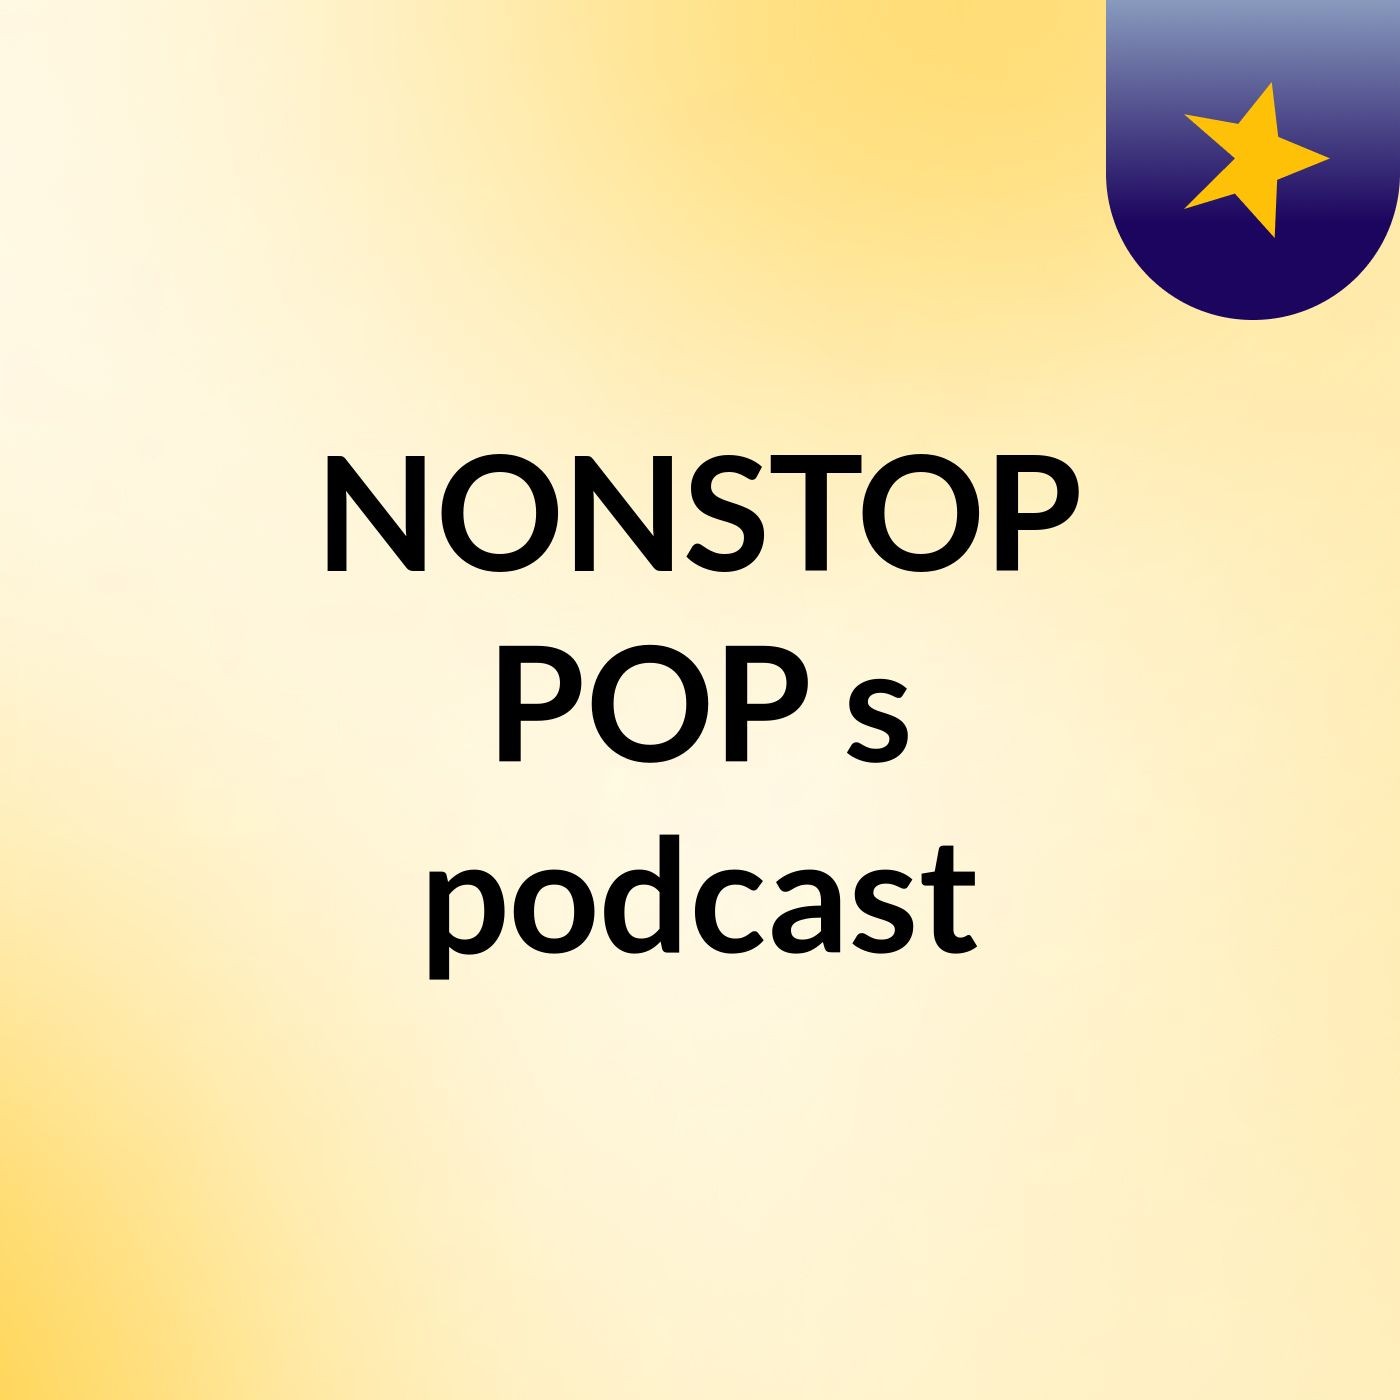 Episode 5 - NONSTOP POP's podcast